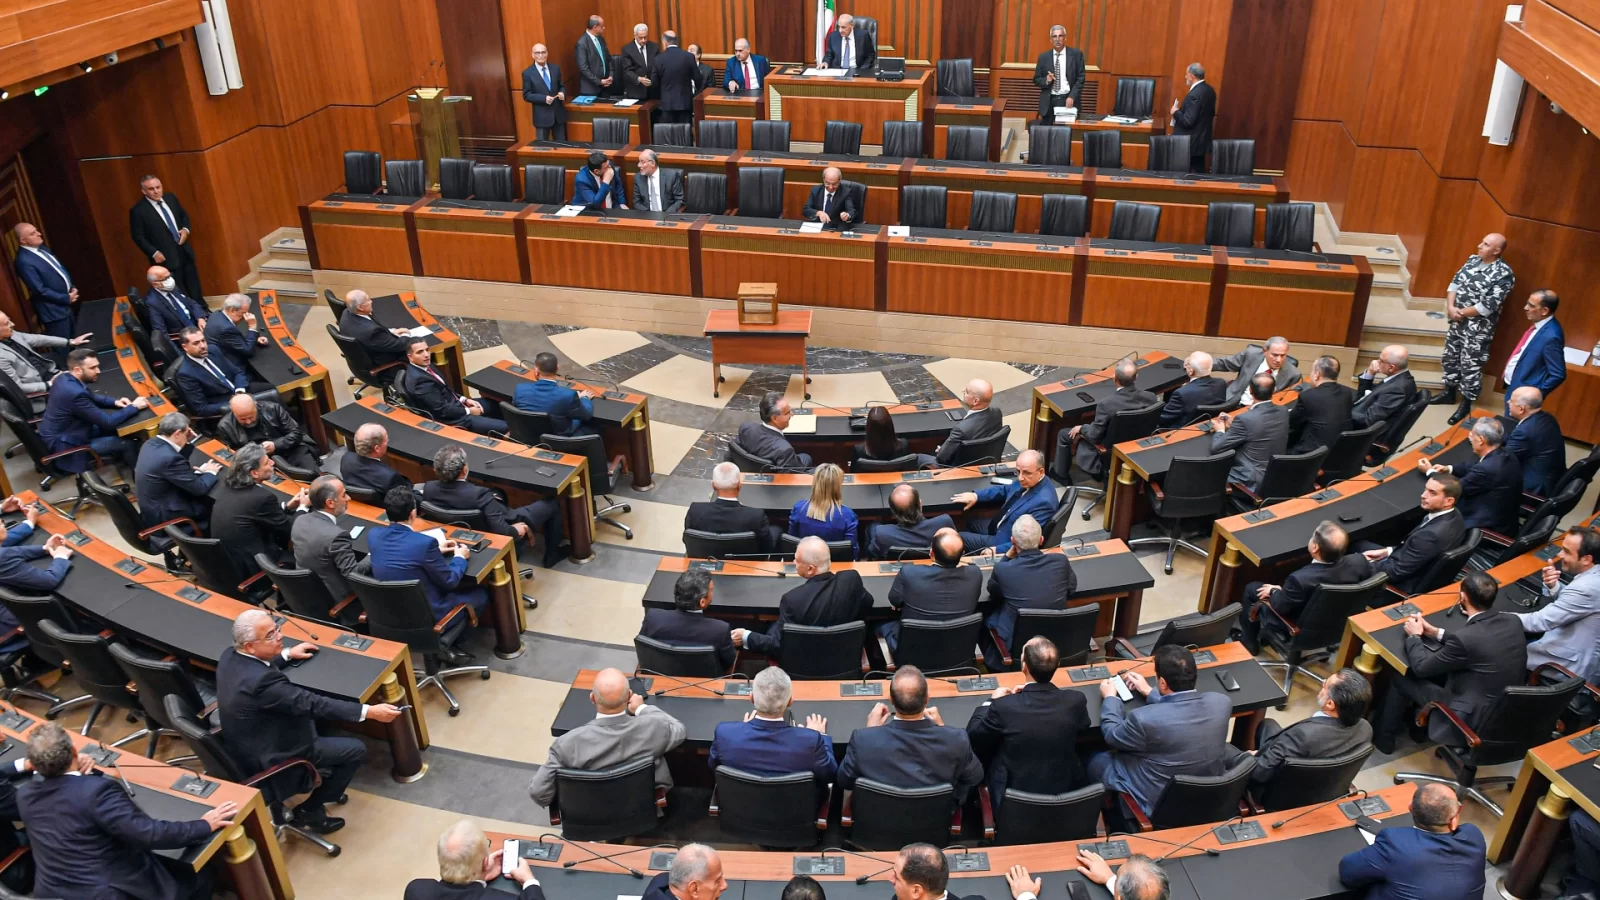 مجلس النواب اللبناني يفشل في انتخاب رئيس للبلاد